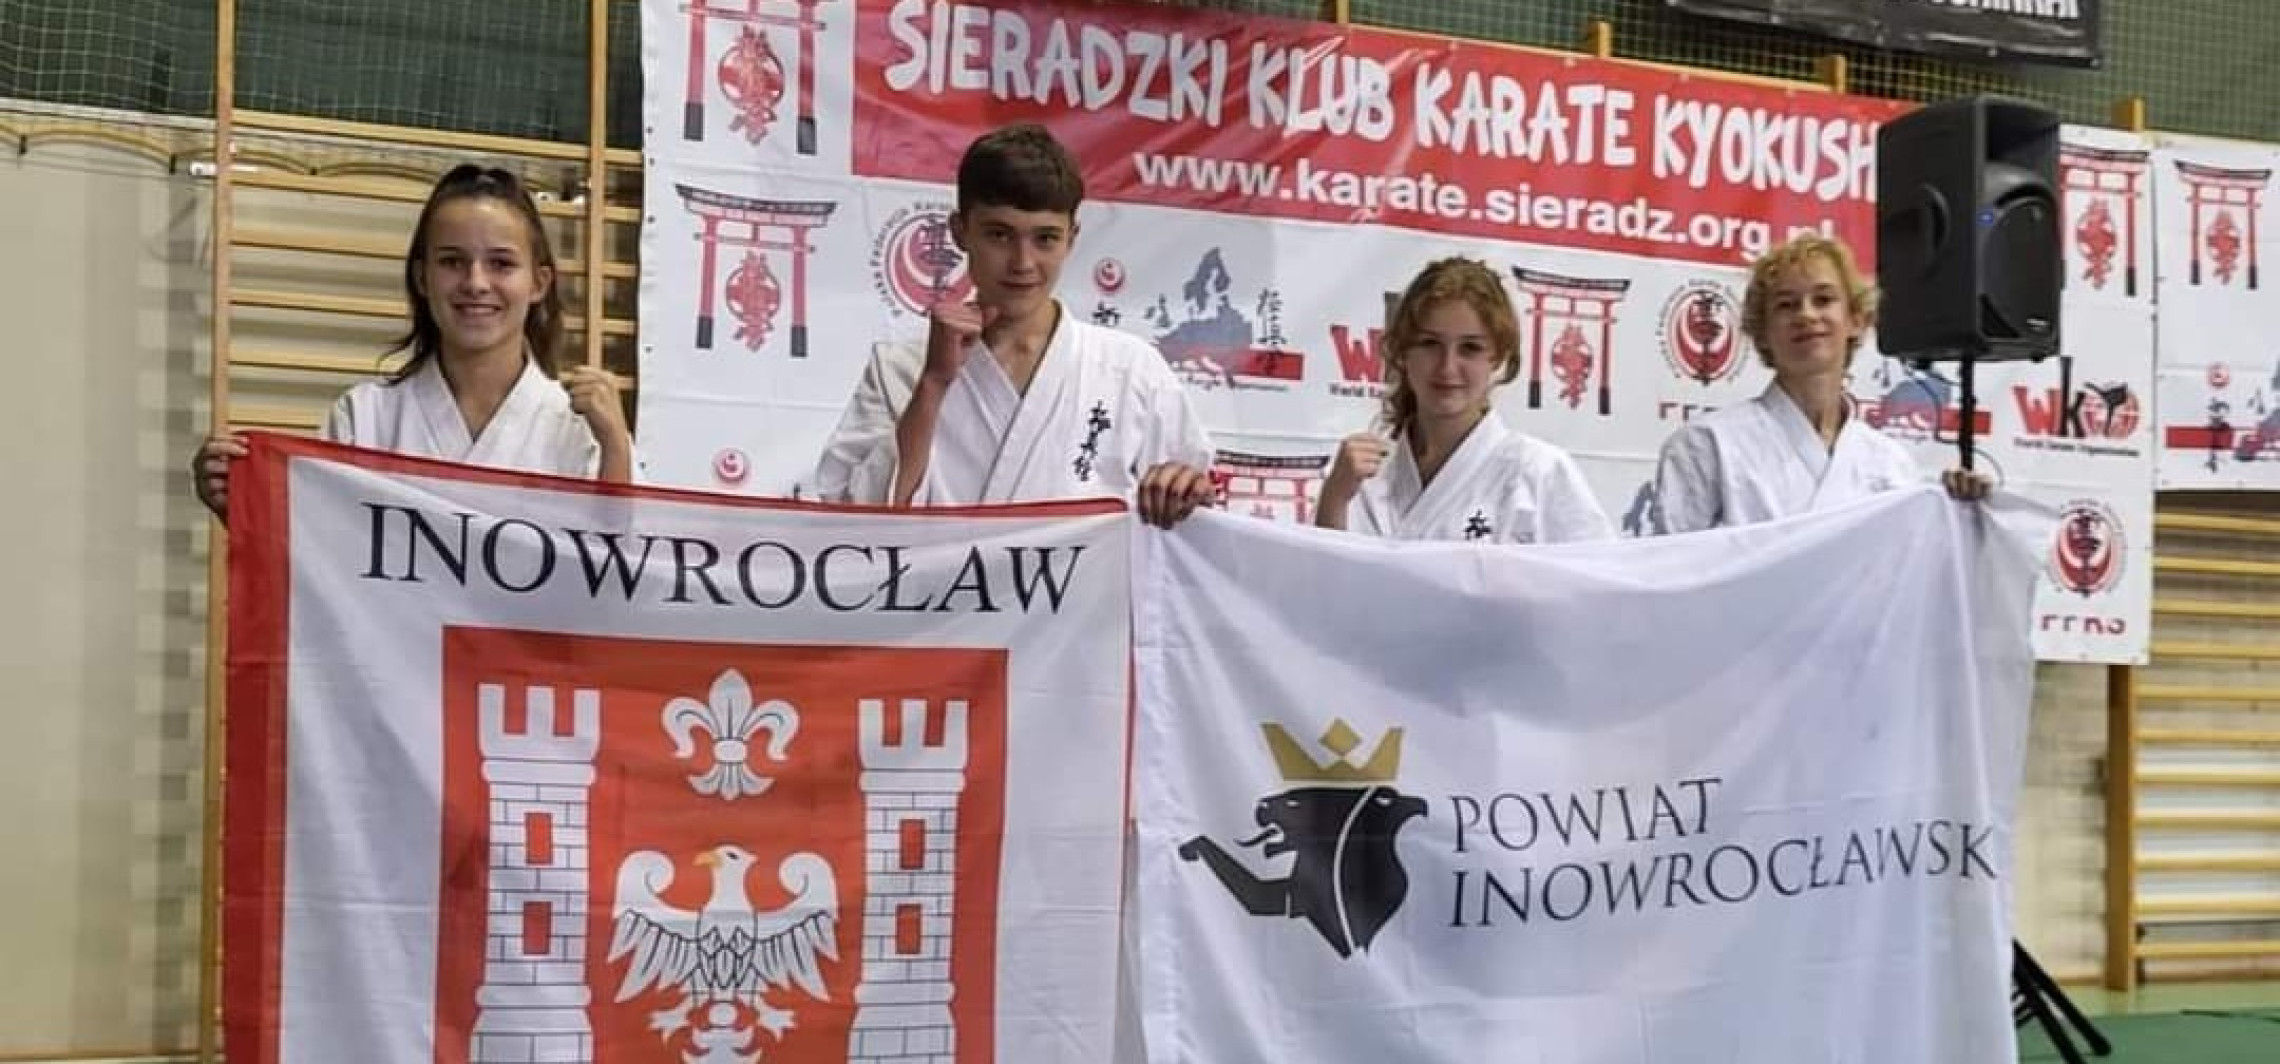 Inowrocław - Sukcesy inowrocławskich karateków w Sieradzu